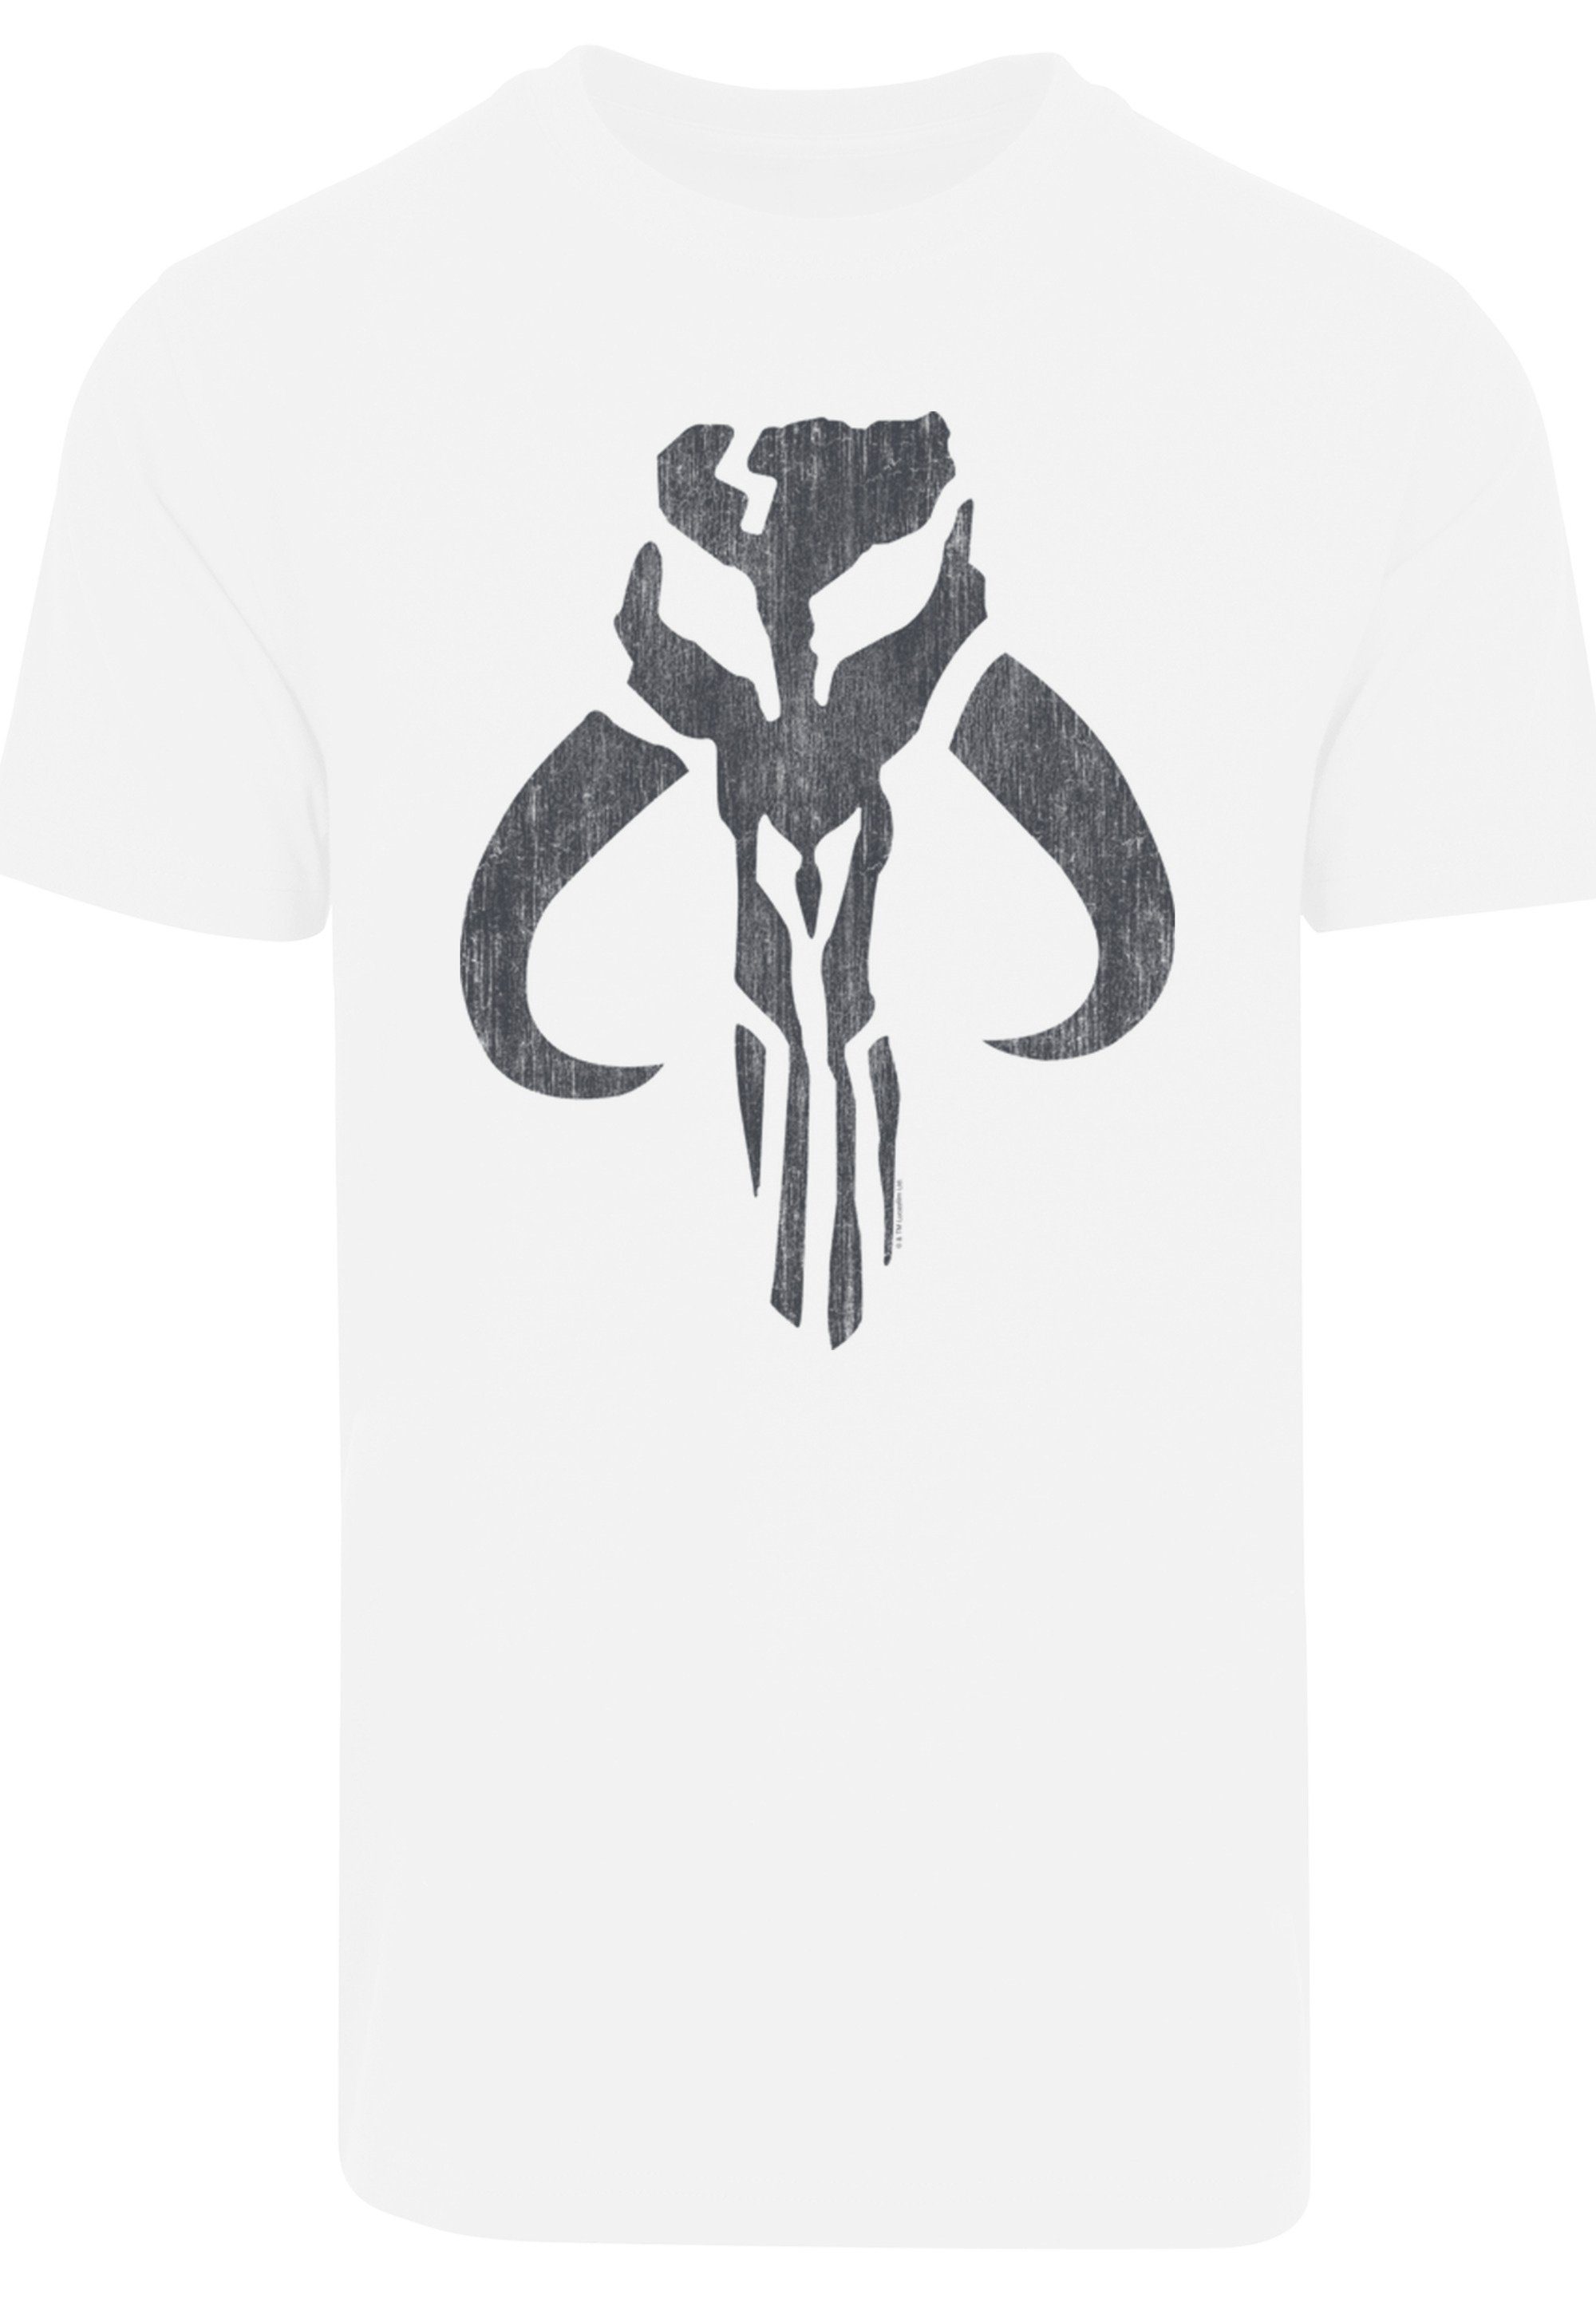 F4NT4STIC T-Shirt Star Print Skull Banther Wars weiß Mandalorian